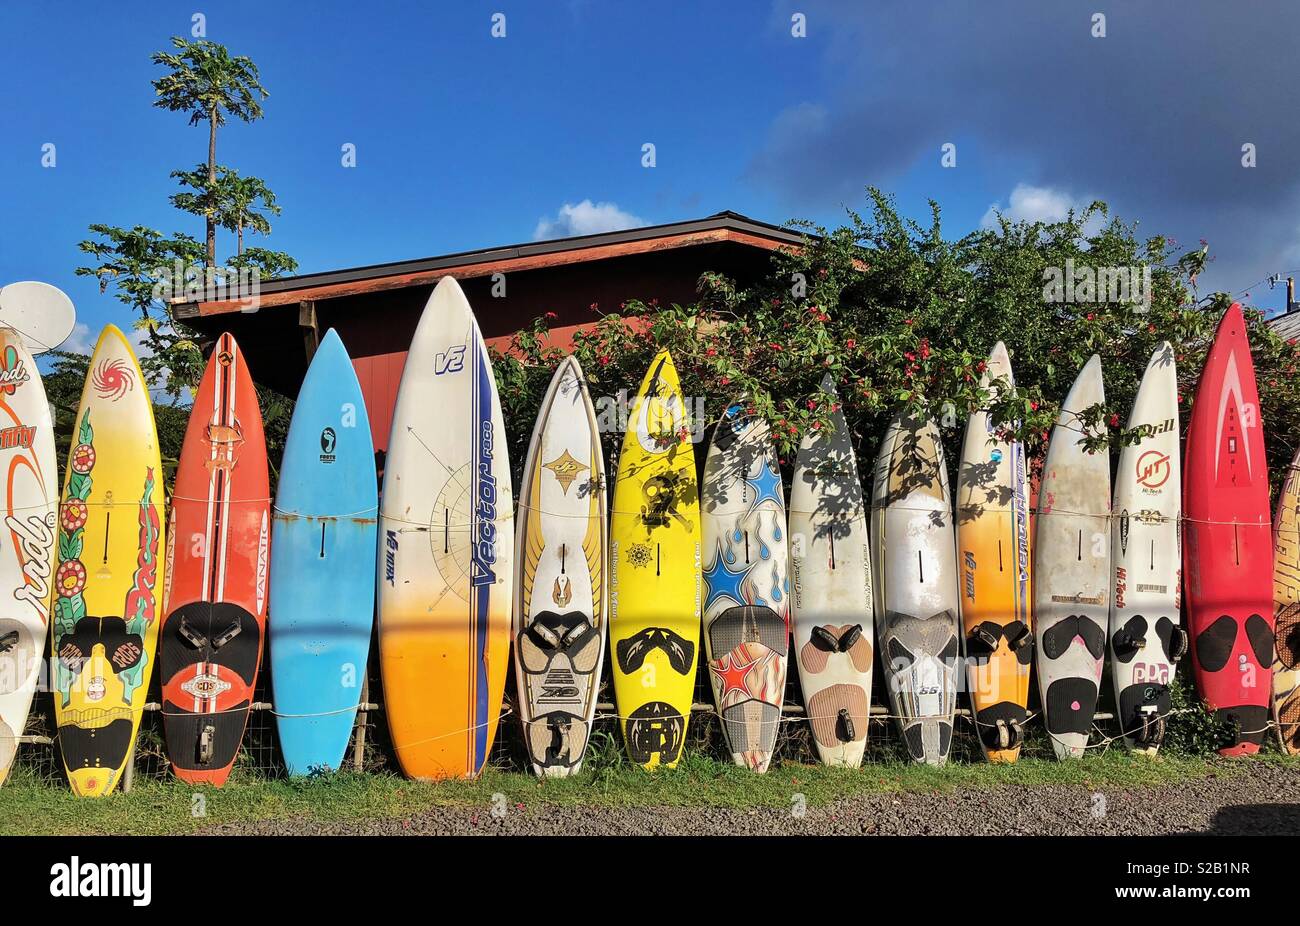 Surfboard fence in Kuau, Maui, Hawaii. Stock Photo